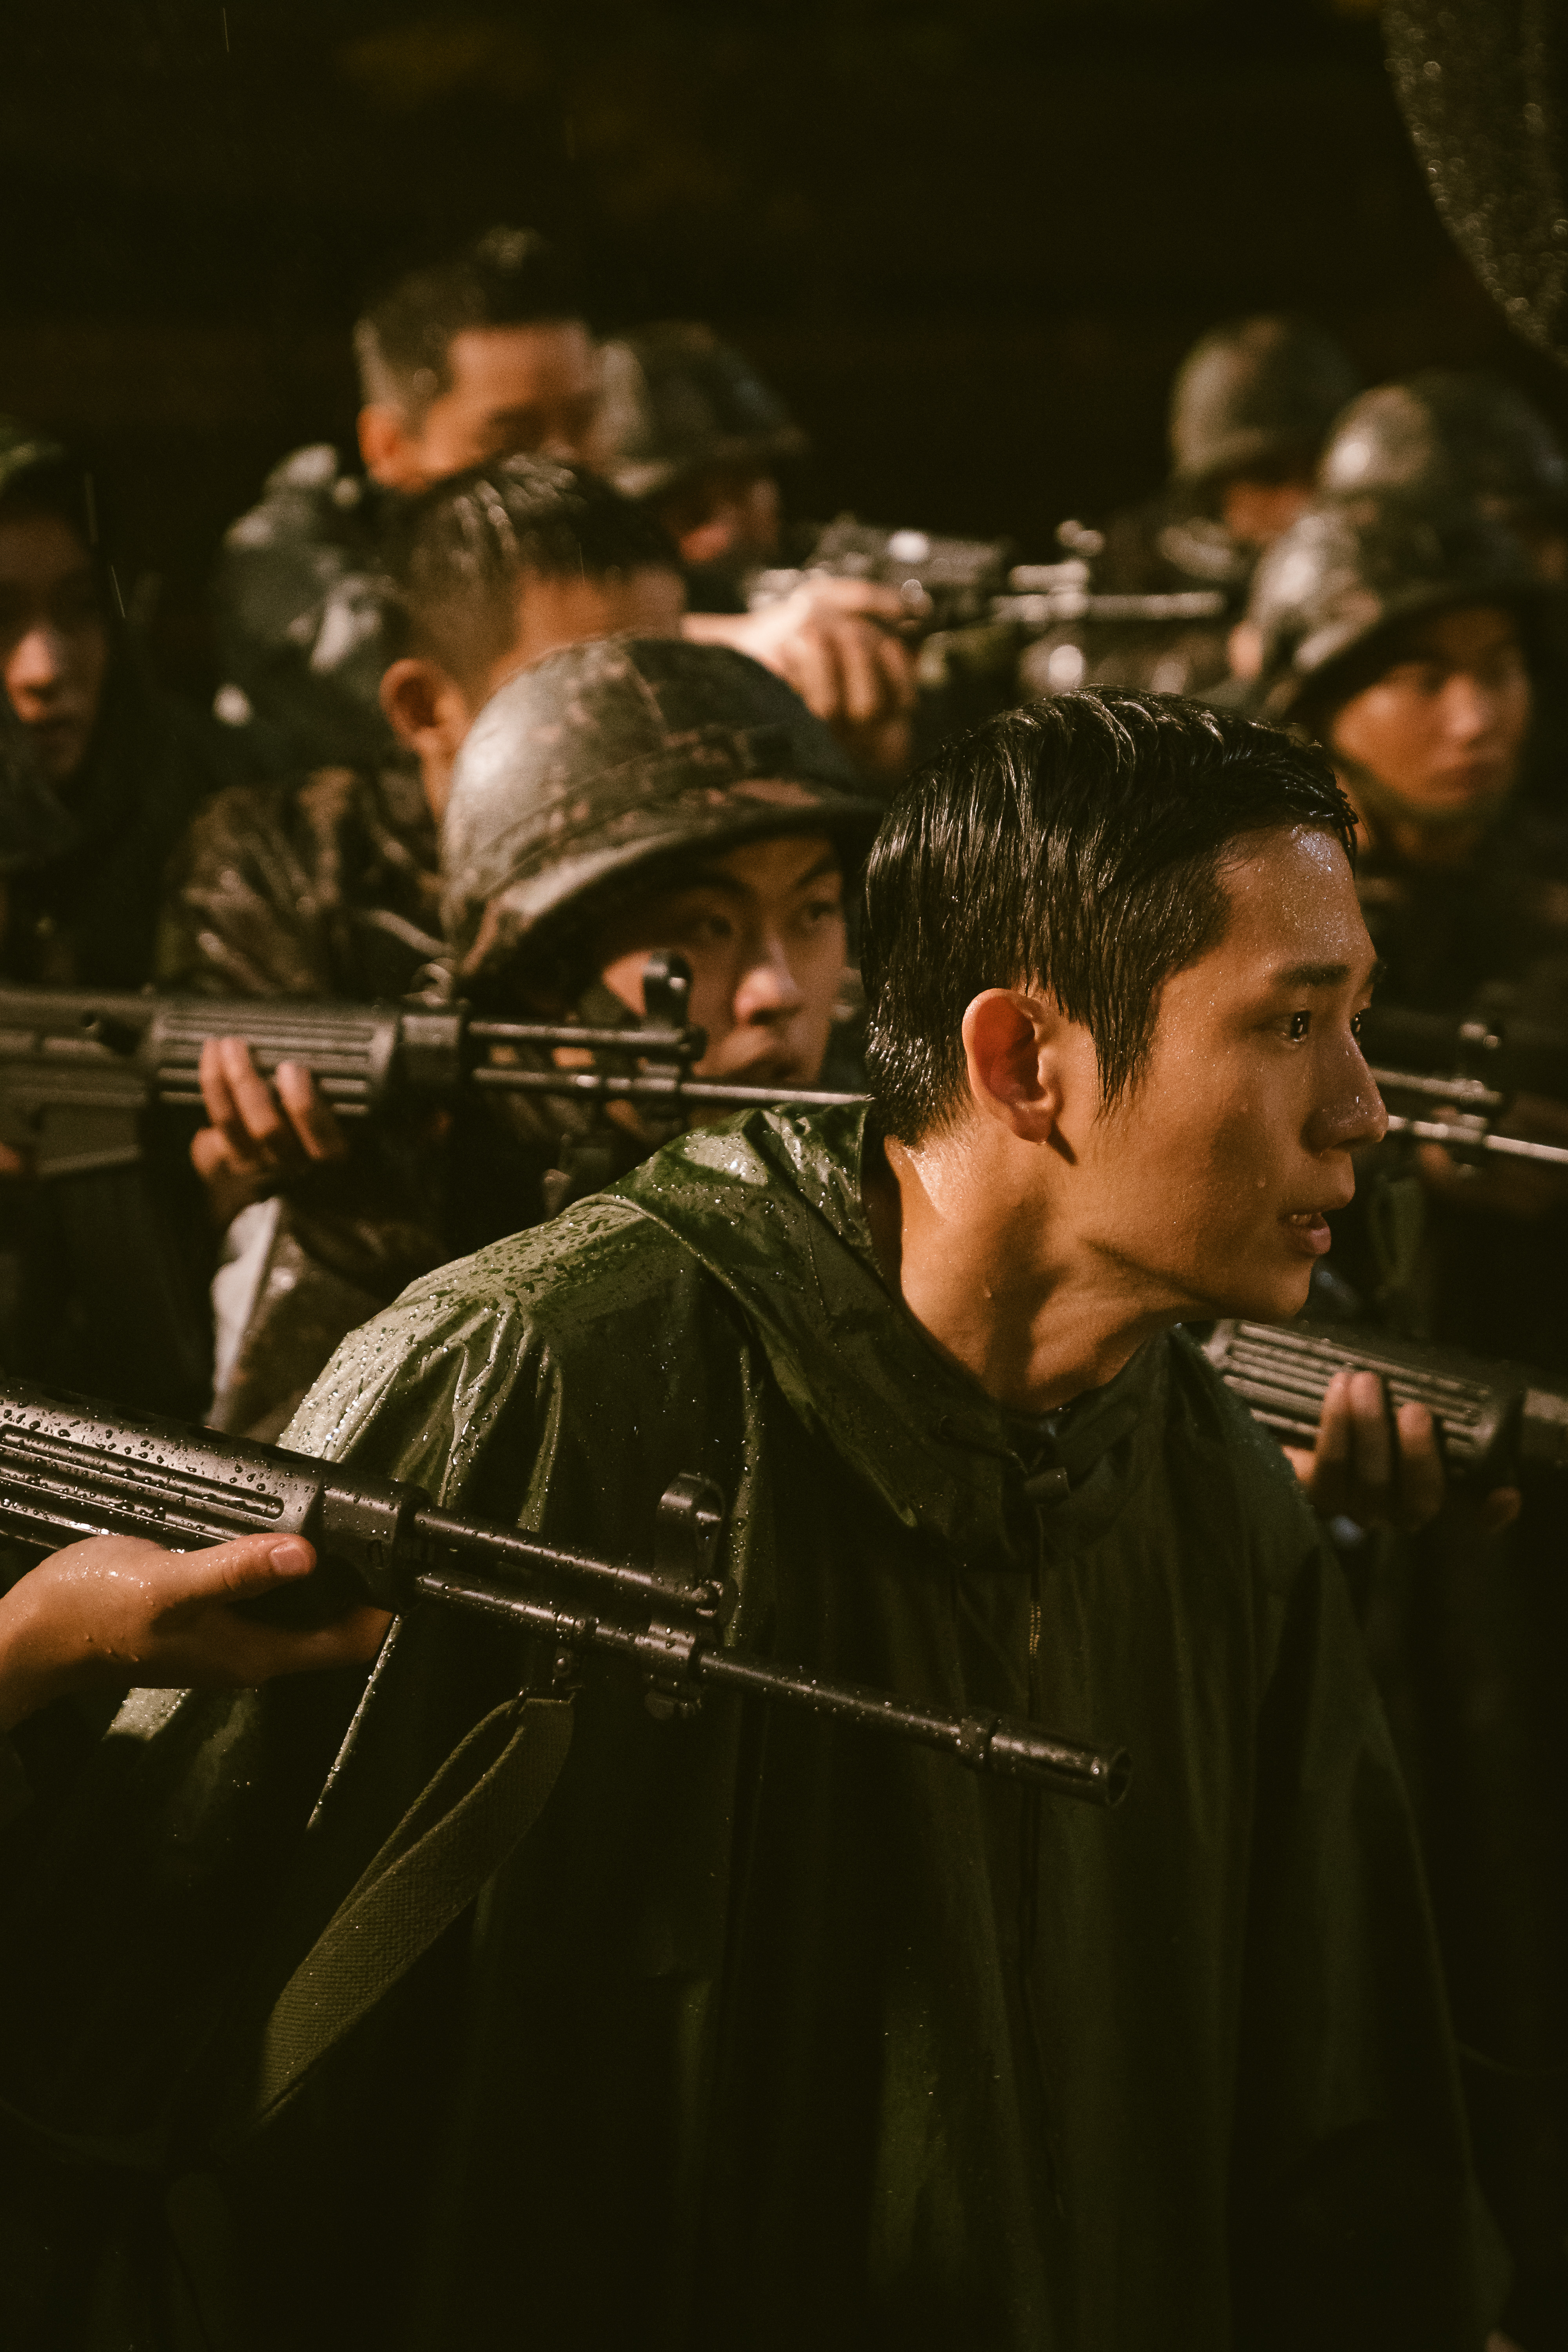 Jung Hae-in in <i></p>
<p>د.ص.</i> (بإذن من Netflix) ” /></p>
<p>Jung Hae-in in <i>د.ص.</i></p>
<p>الموسم الأول من <i>د.ص.</i>, تم إصداره في عام 2021 ، تم إساءة معاملة الضوء داخل نظام التجنيد العسكري الإلزامي لكوريا الجنوبية والأسباب التي تجعل البعض يائسة للخروج منه. يشير لقب العرض إلى فريق من الجنود يسمى “Deserter Pursuit” ، والذين يتم تكليفهم بتعقب والتقاط الهاربين العسكريين. على الرغم من وجود ست حلقات فقط ، إلا أن الموسم الأول كان له صدى عميق مع المجندين السابقين ، وحتى دفع وزارة الدفاع في كوريا الجنوبية إلى إصدار بيان مفاده أن حوادث العنف والإساءة في الجيش كانت في حالة تراجع. سيعود المخرج هان جون هي للموسم الثاني ، بالإضافة إلى الممثلين Jung Hae-in و Koo Kyo-Hwan ، الذي لعب على التوالي في Jun-Ho و Han-Yeol ، الثنائي الرئيسي للمسلسل.</p>
<h2><span id=